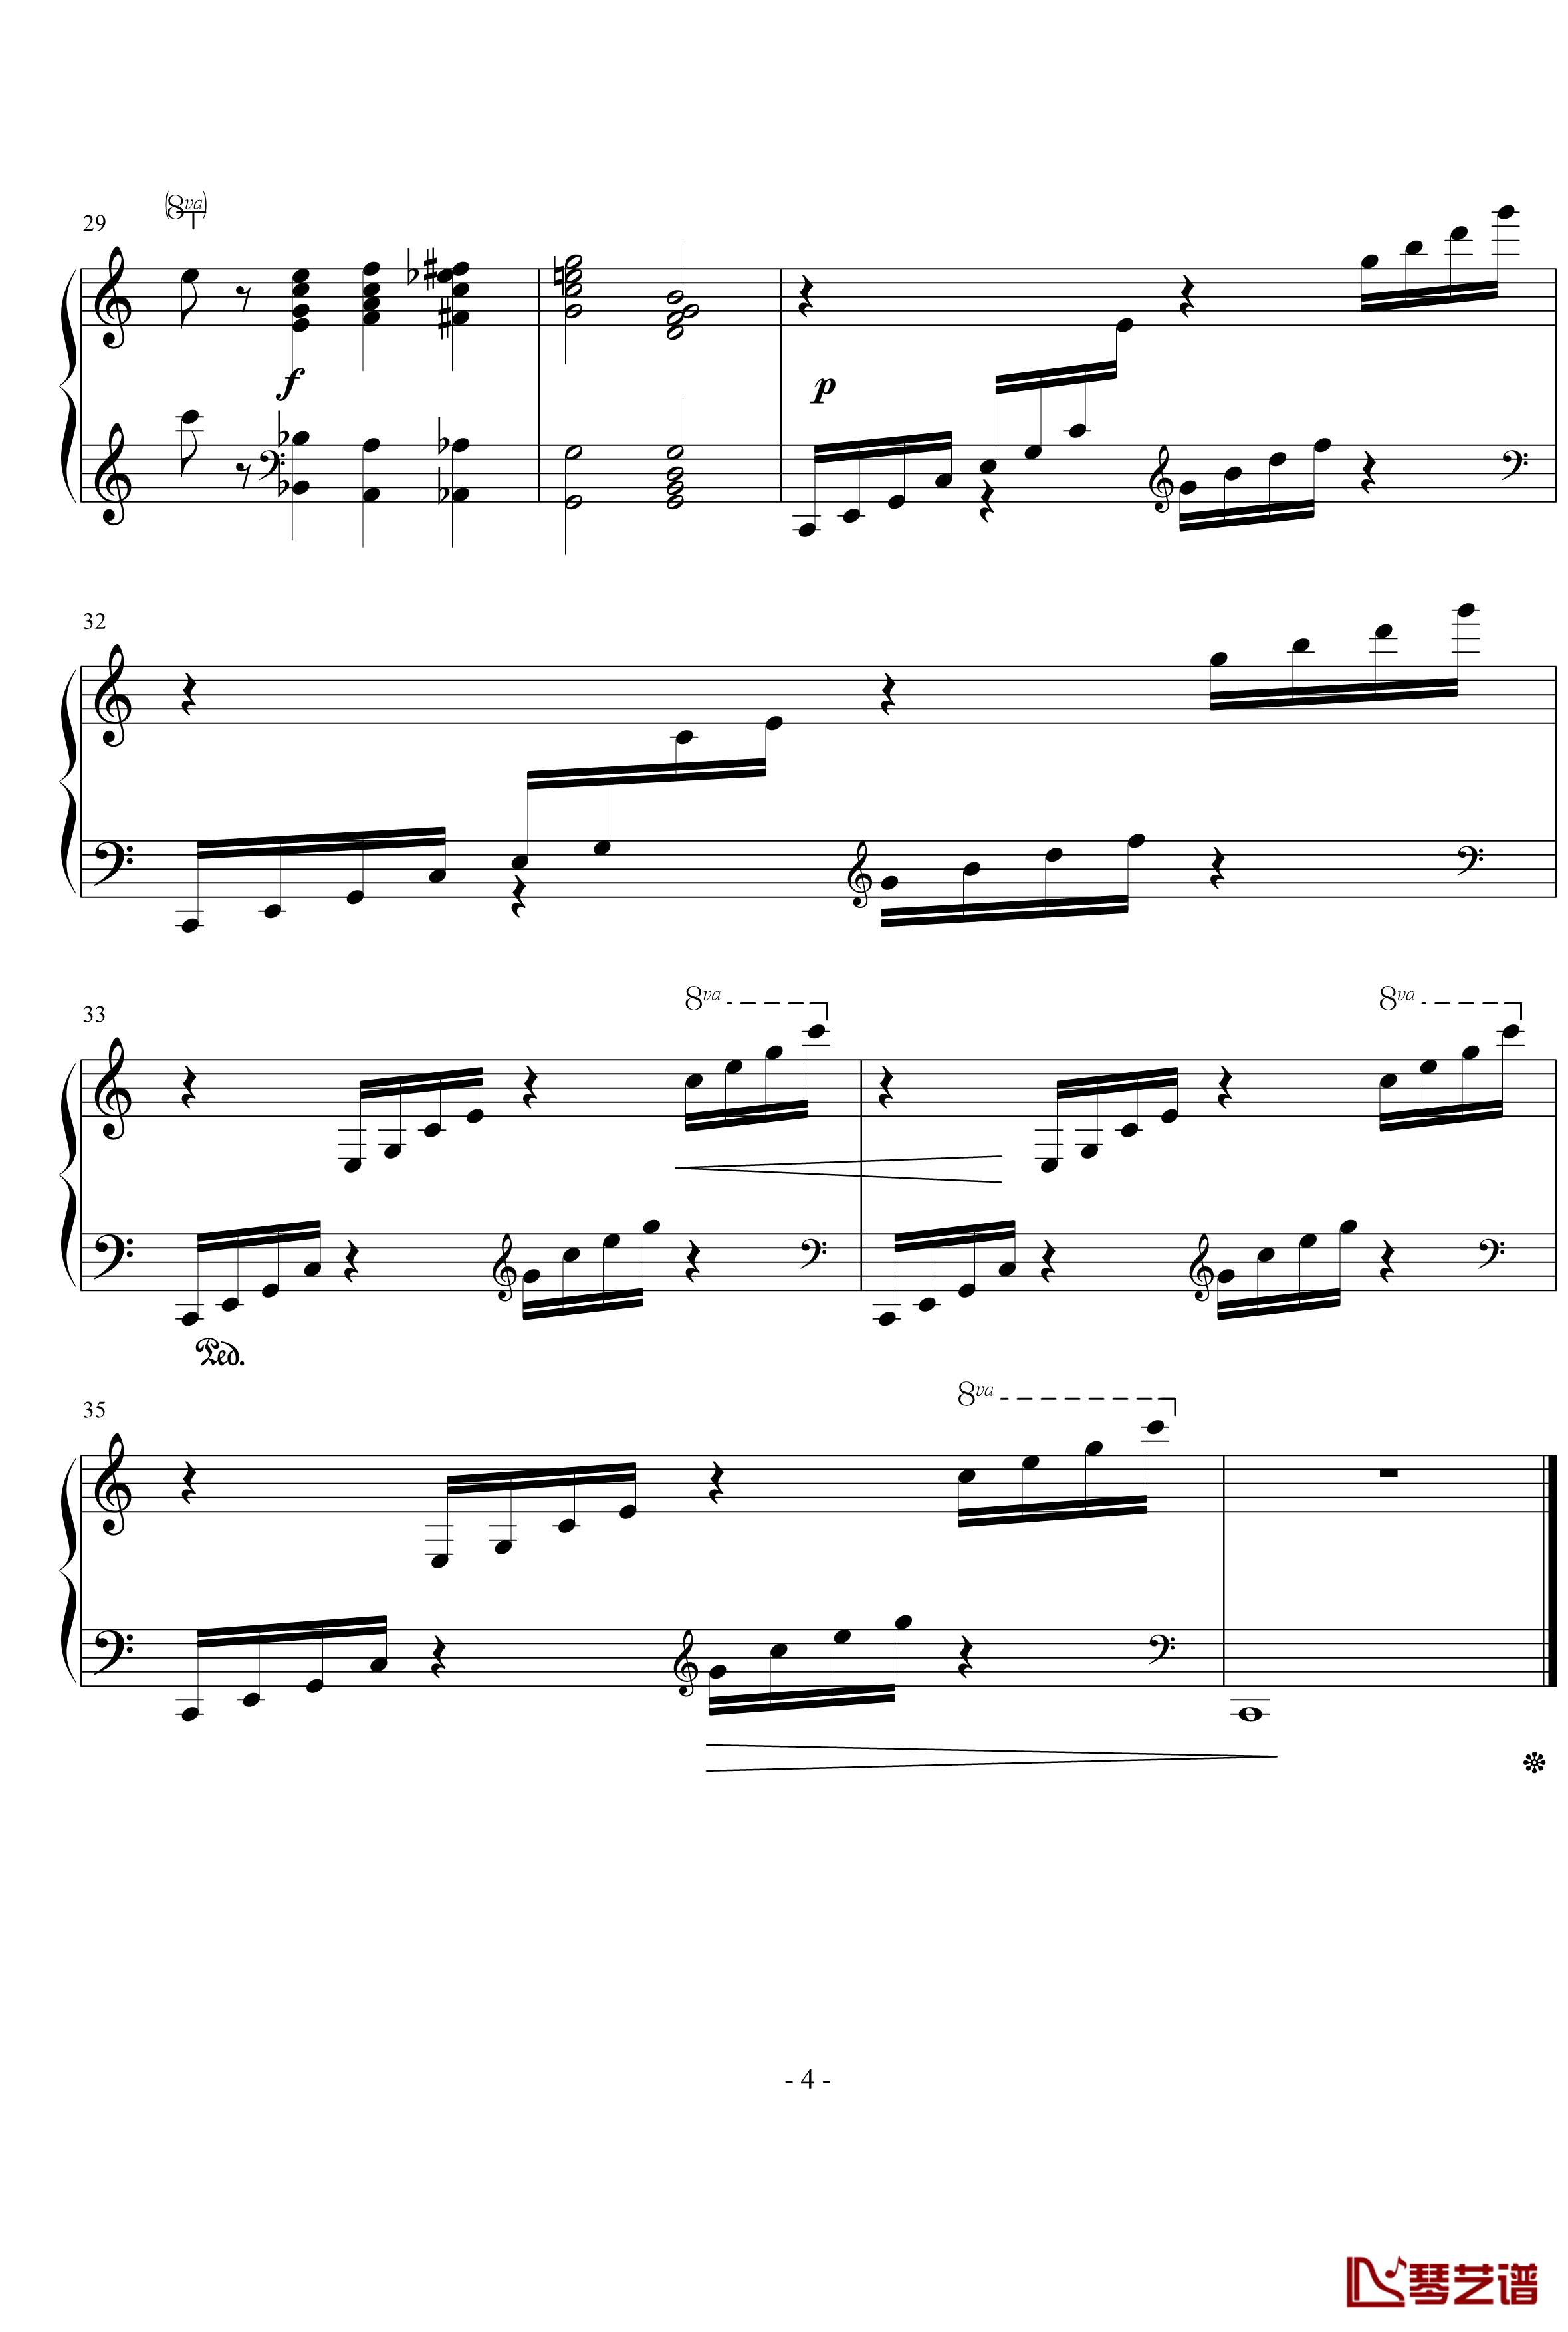 十二首练习形式的钢琴练习曲1钢琴谱-李斯特4